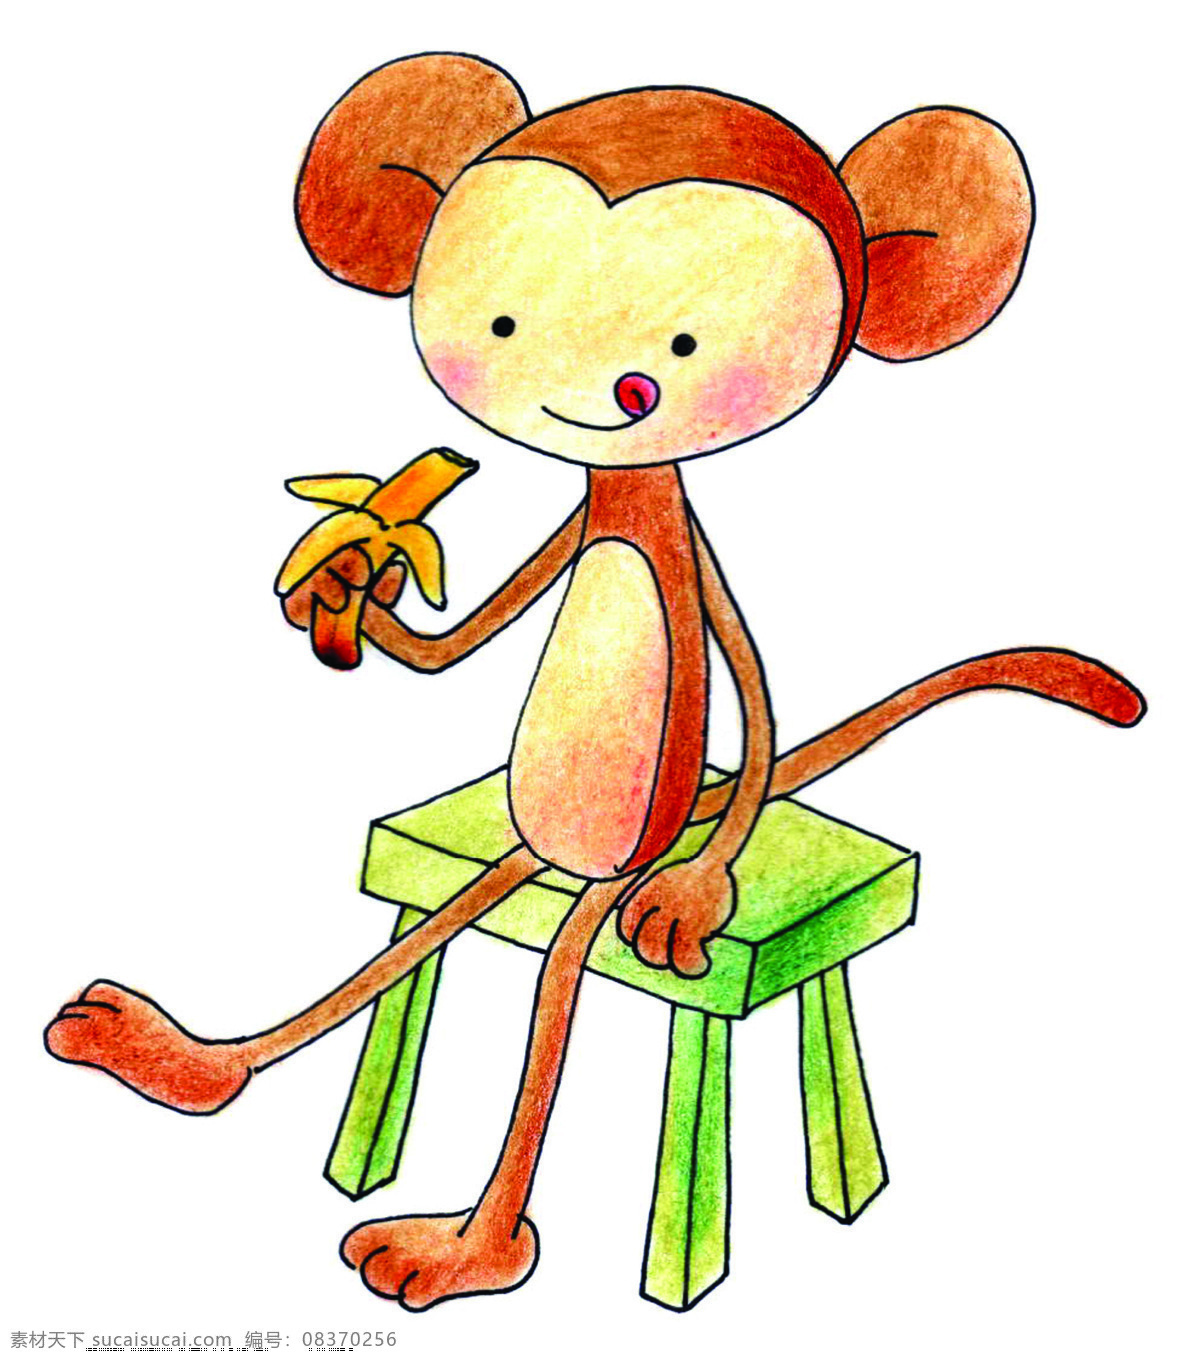 插画图片 动漫动画 小猴子 吃 香蕉 小 猴子 设计素材 模板下载 插画集